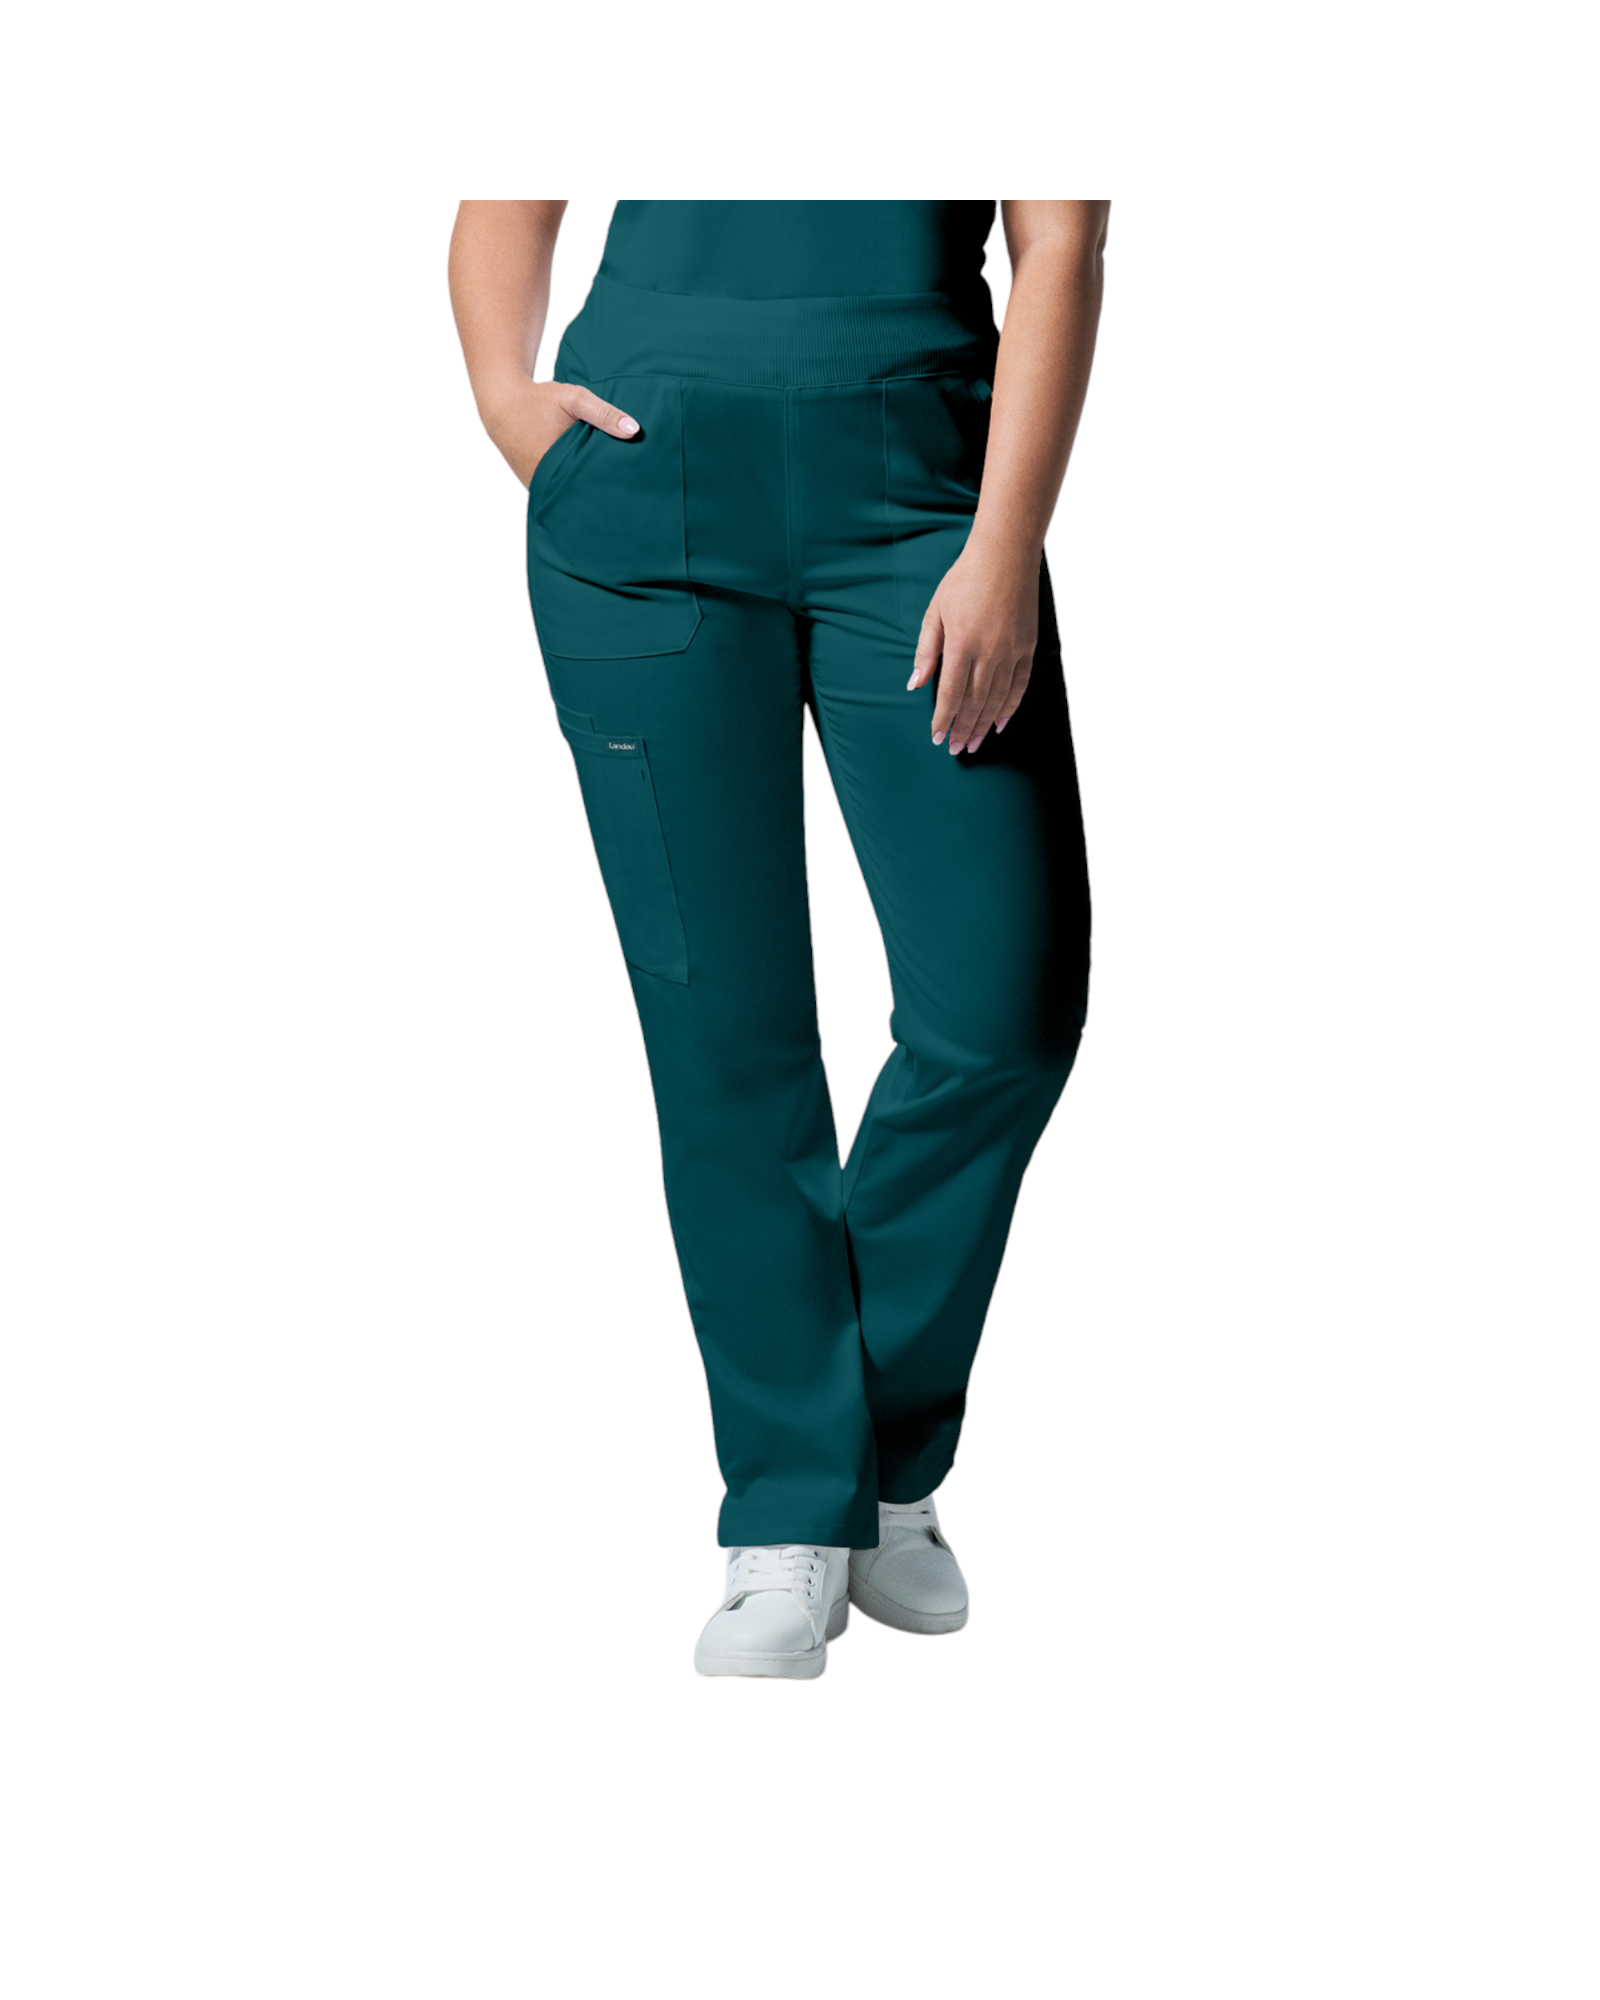 Pantalons 6 poches pour femmes Landau Proflex #LB405 OS devant couleur Caraïbes